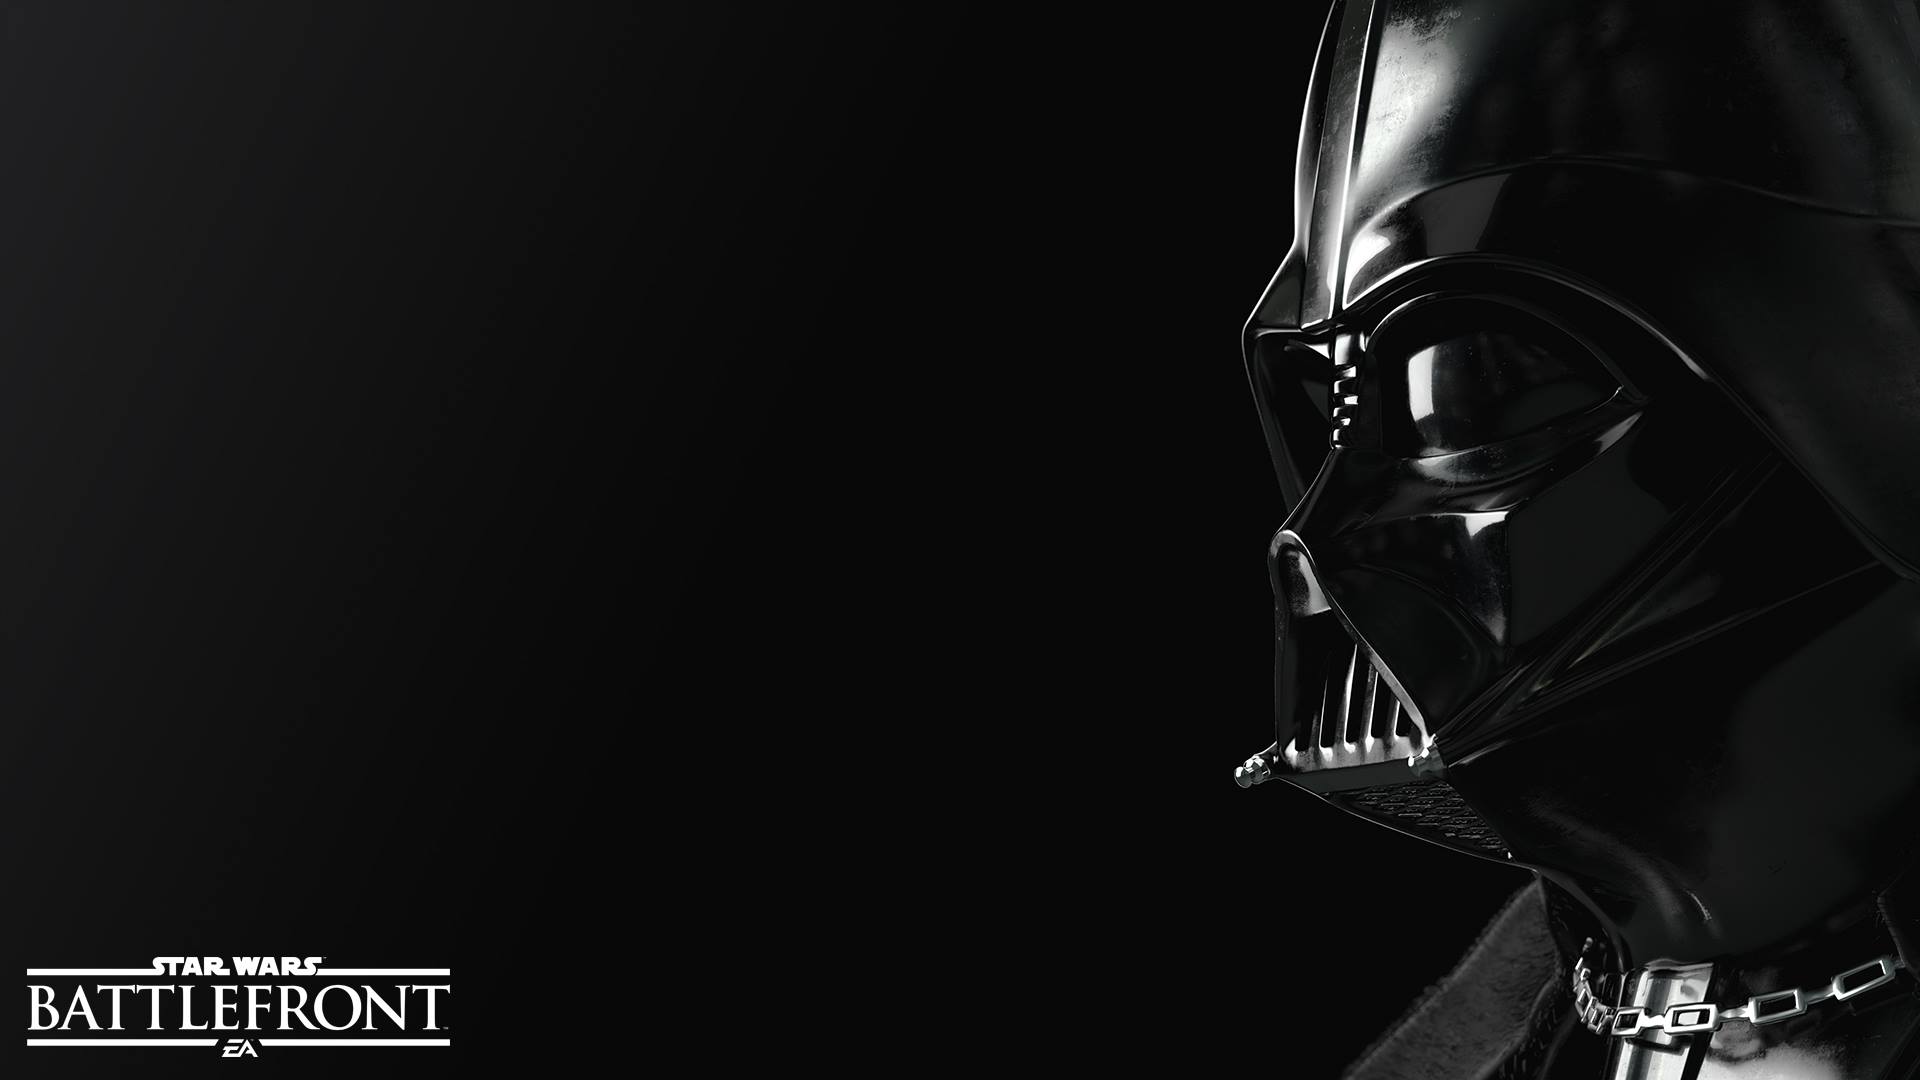 Vdeo Game   Star Wars Battlefront Star Wars Battlefront Darth Vader